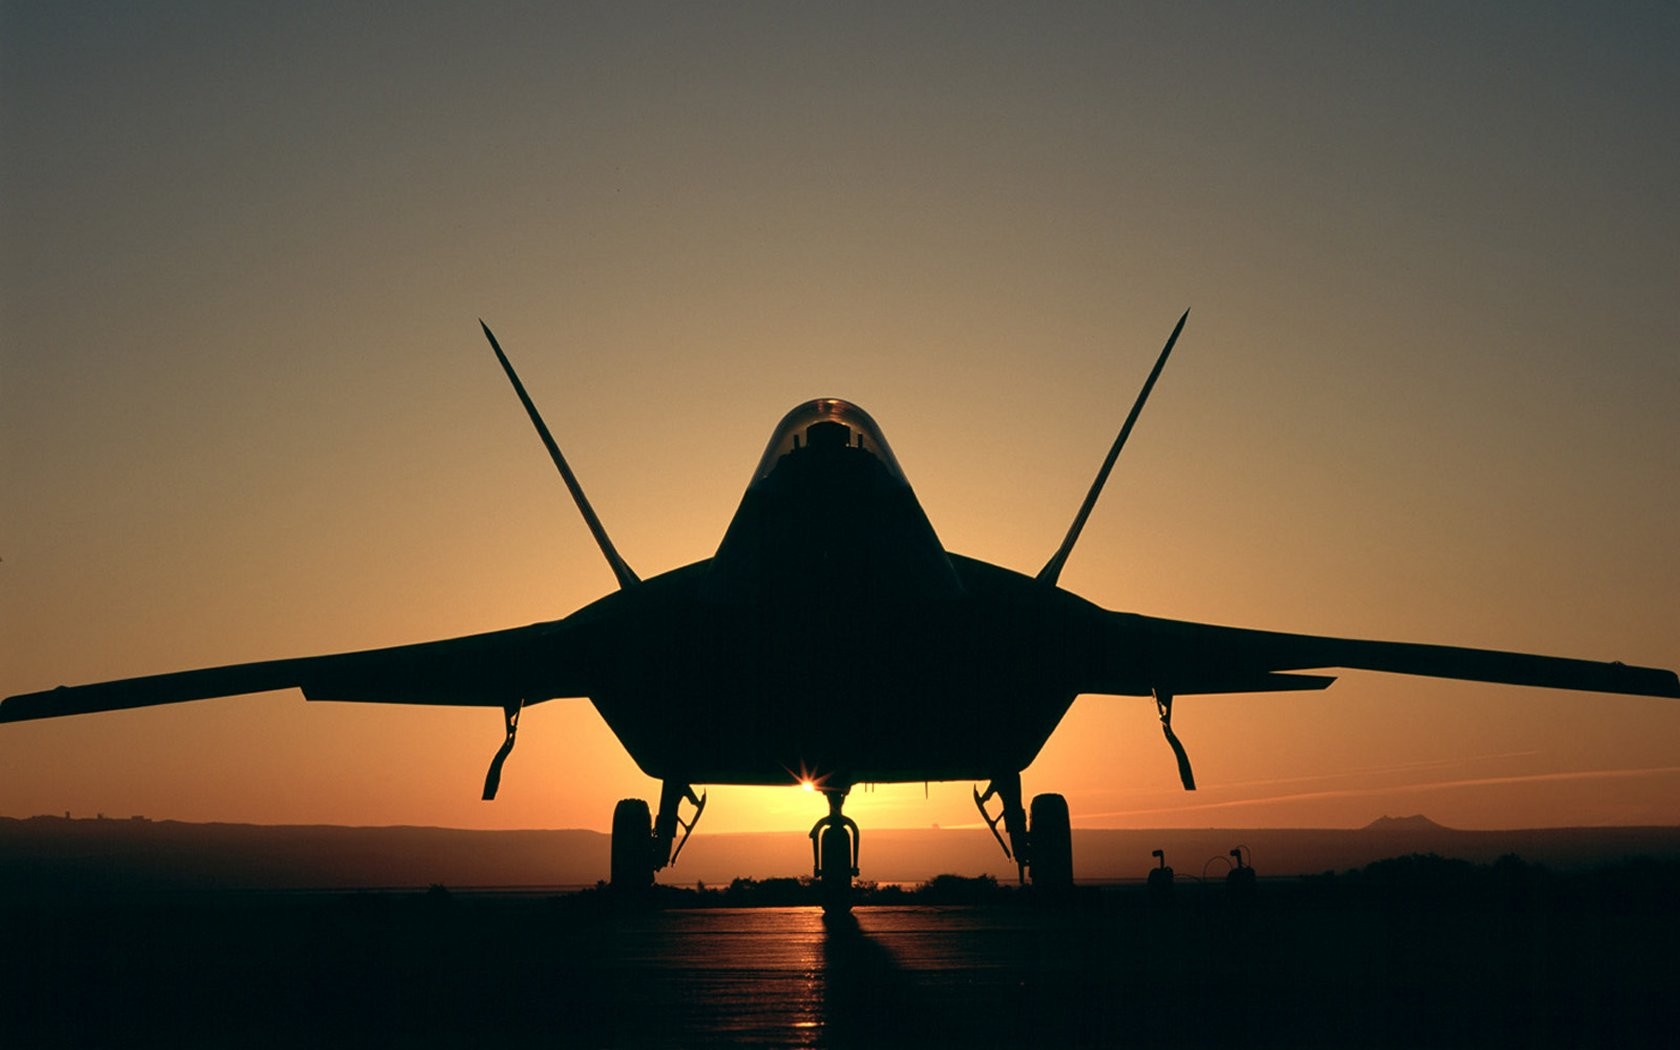 General 1680x1050 aircraft sunset silhouette dark sunlight military aircraft military vehicle vehicle American aircraft